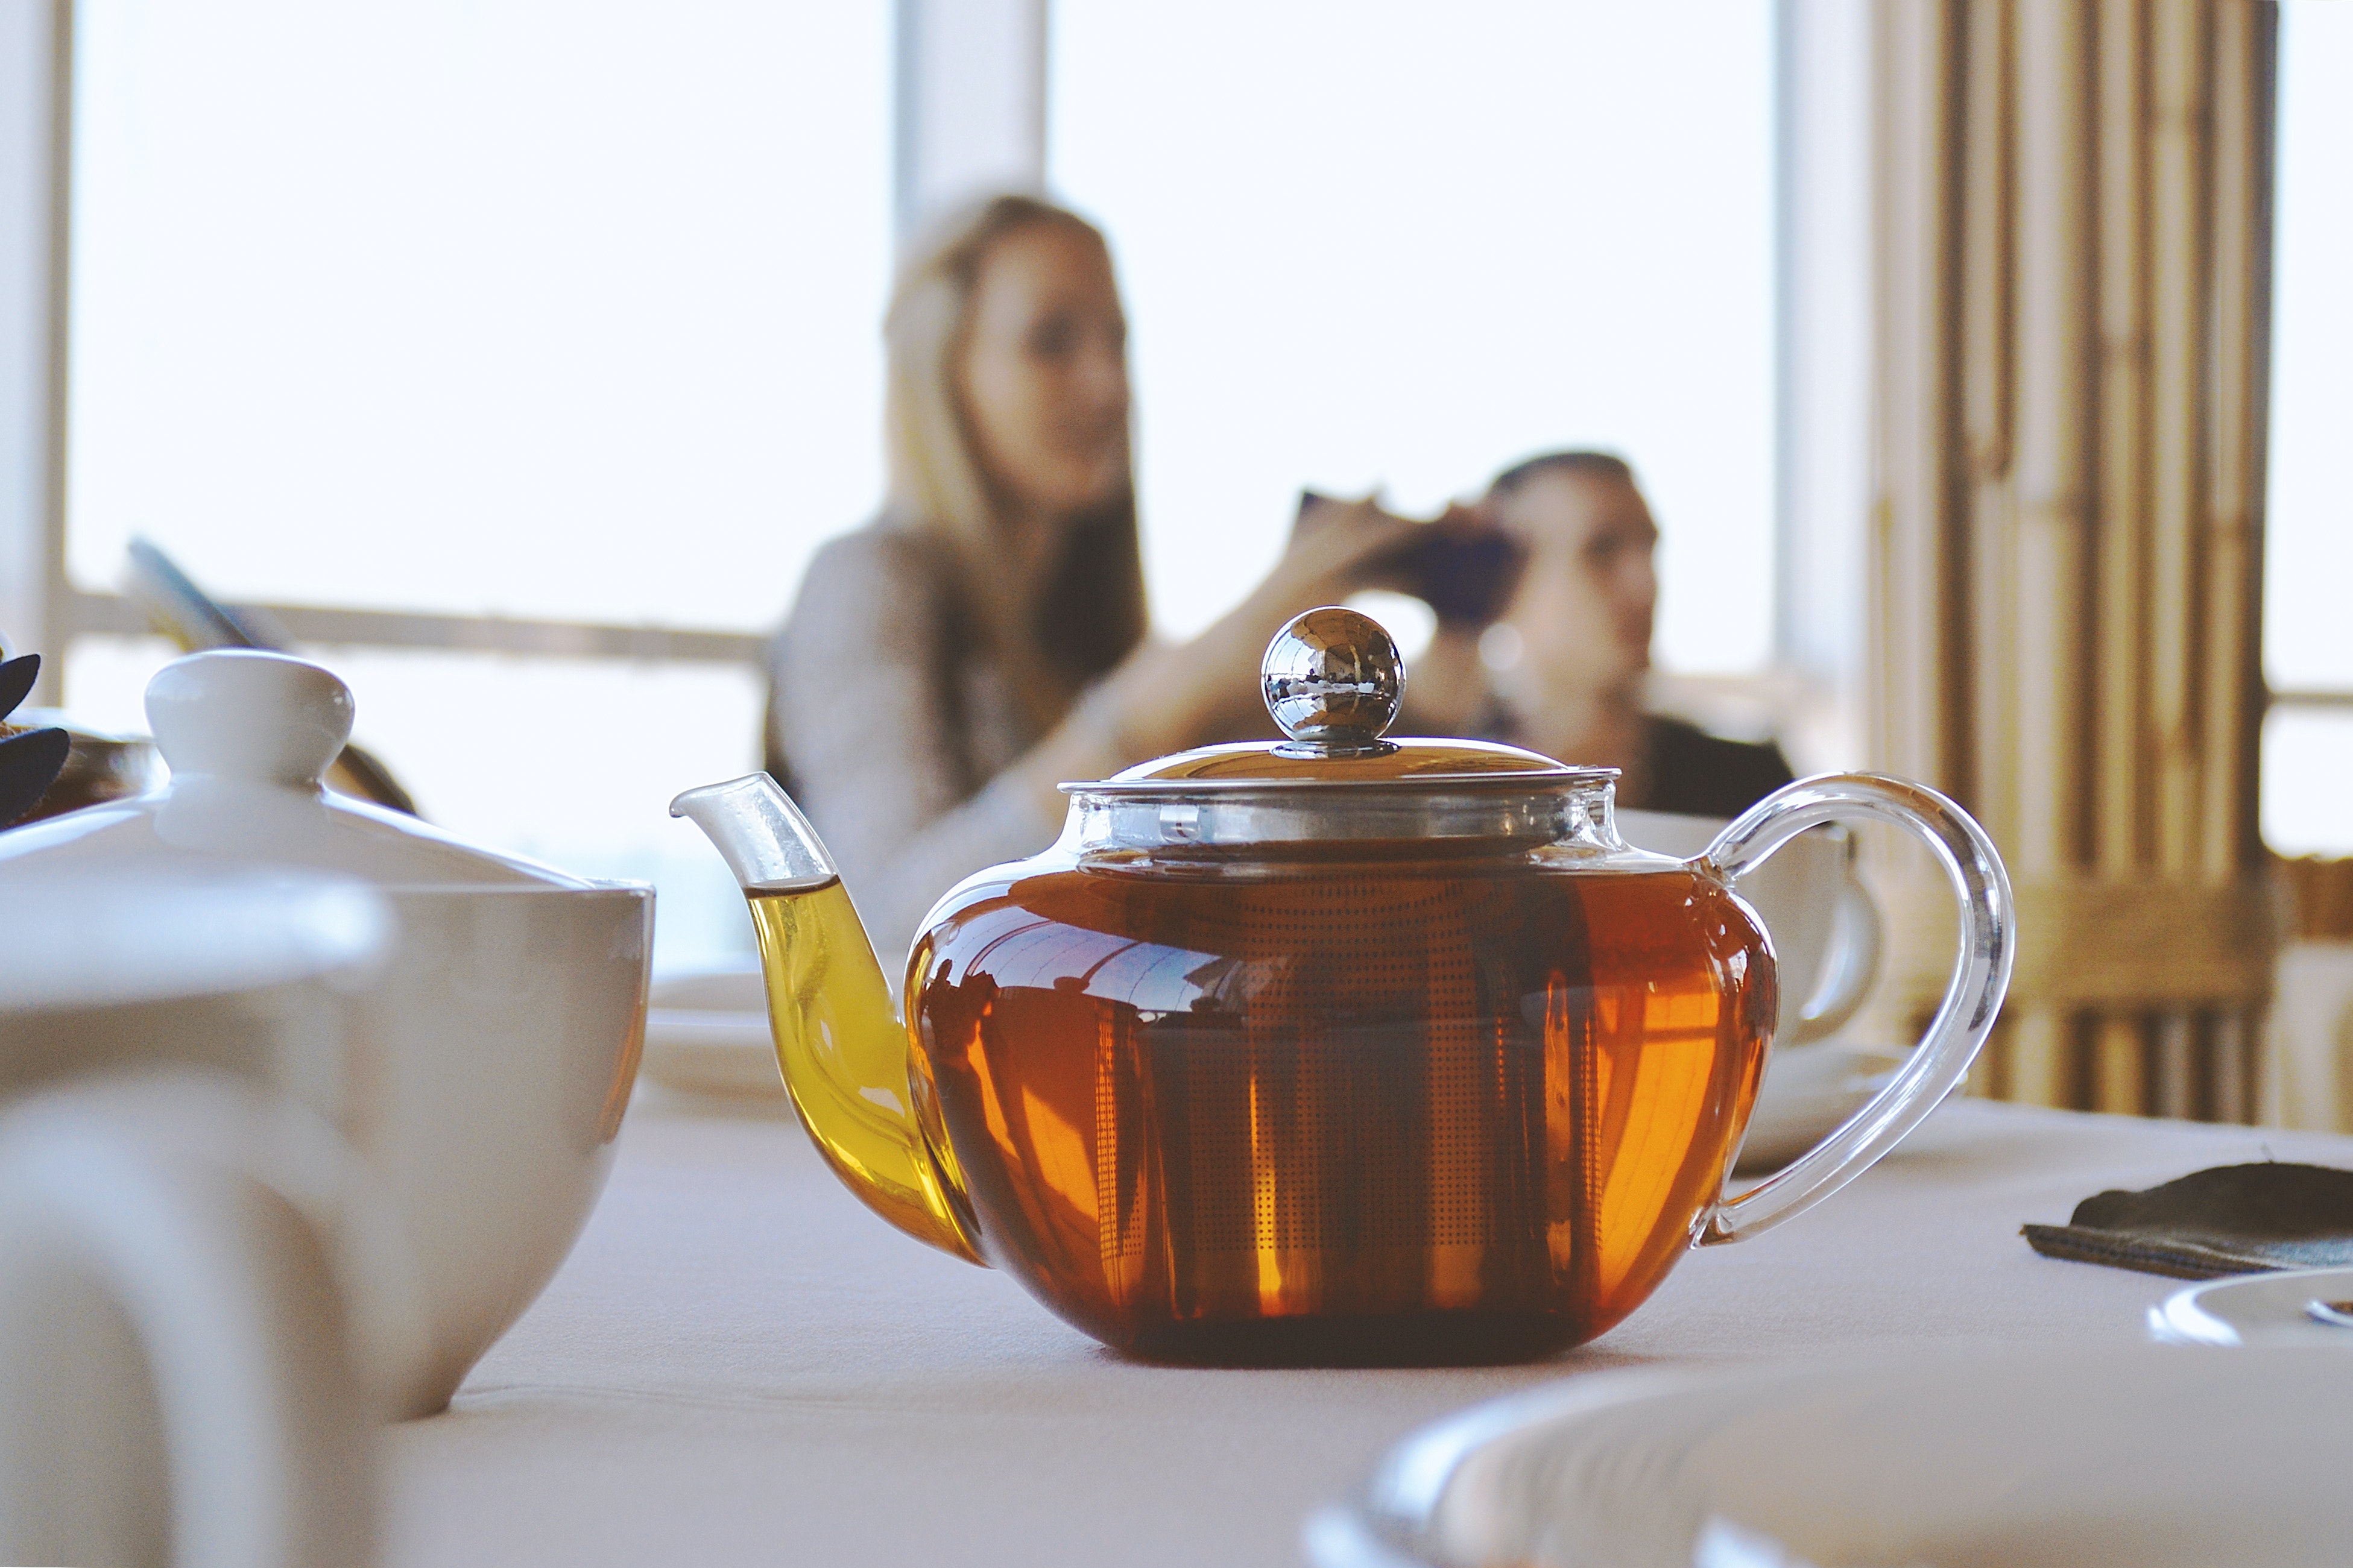 Вчерашний чай можно пить. Чай в чайнике. Чайник с чаем. Чай в заварнике. Чайник на столе.